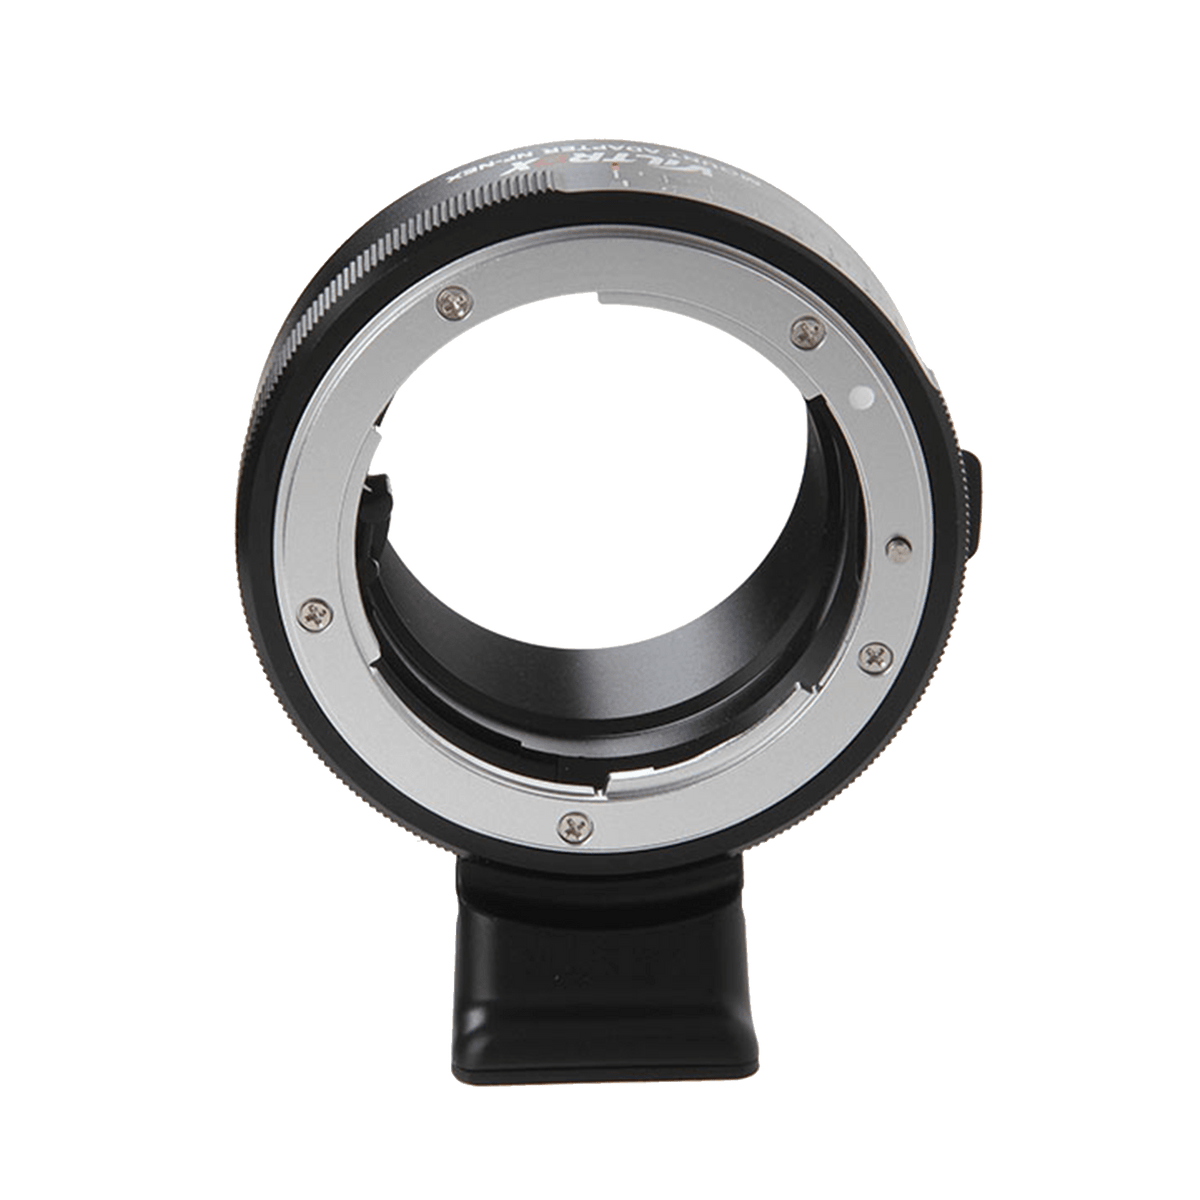 Rollei Objektive Viltrox NF-NEX Adapter für Nikon F-Objektive an Sony E-Mount